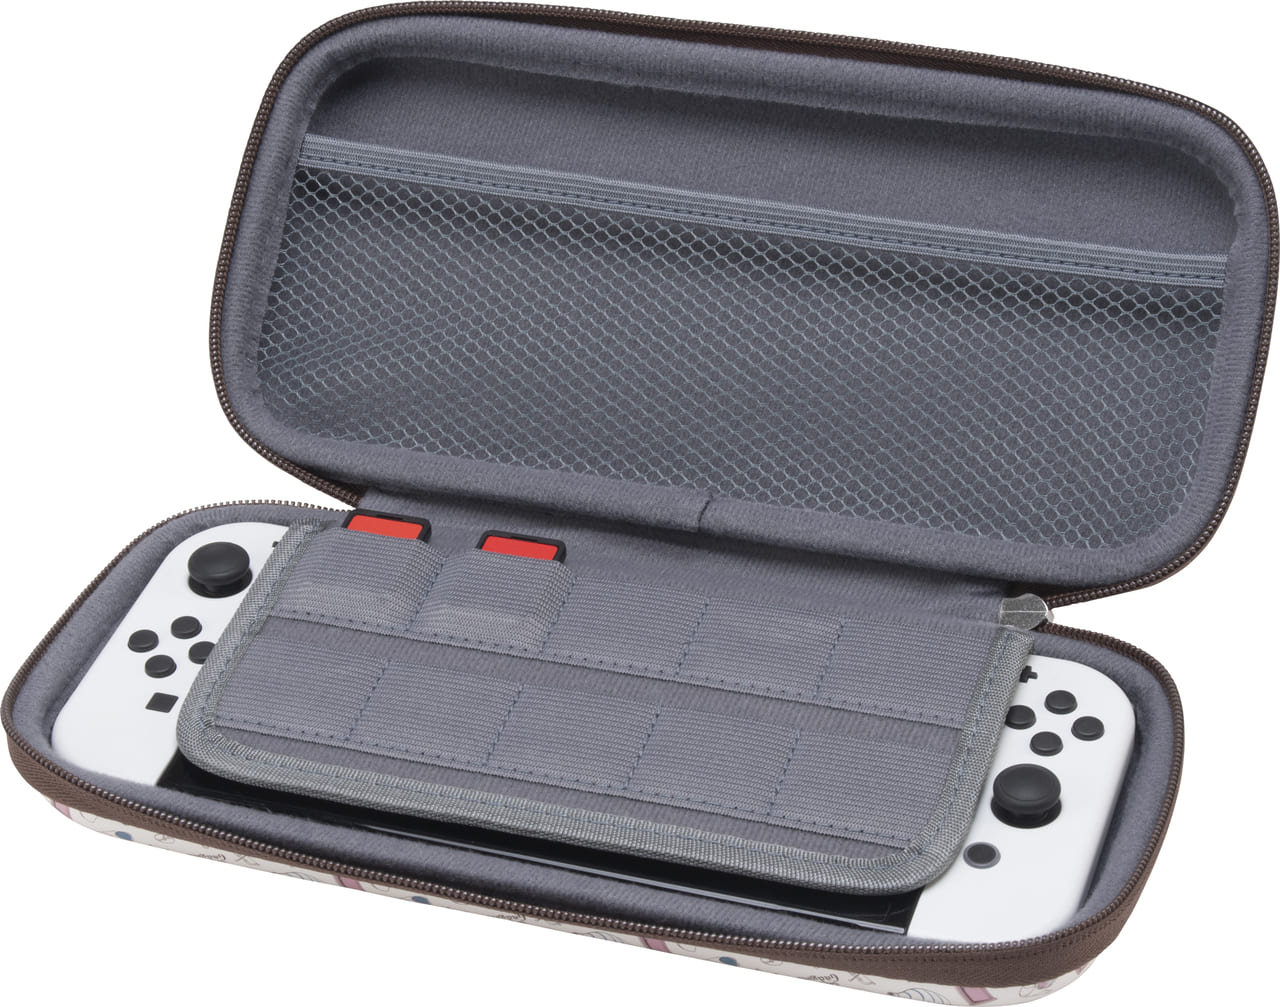 『ドラえもん』デザインのNintendo Switch用コントローラが8月3日発売決定8